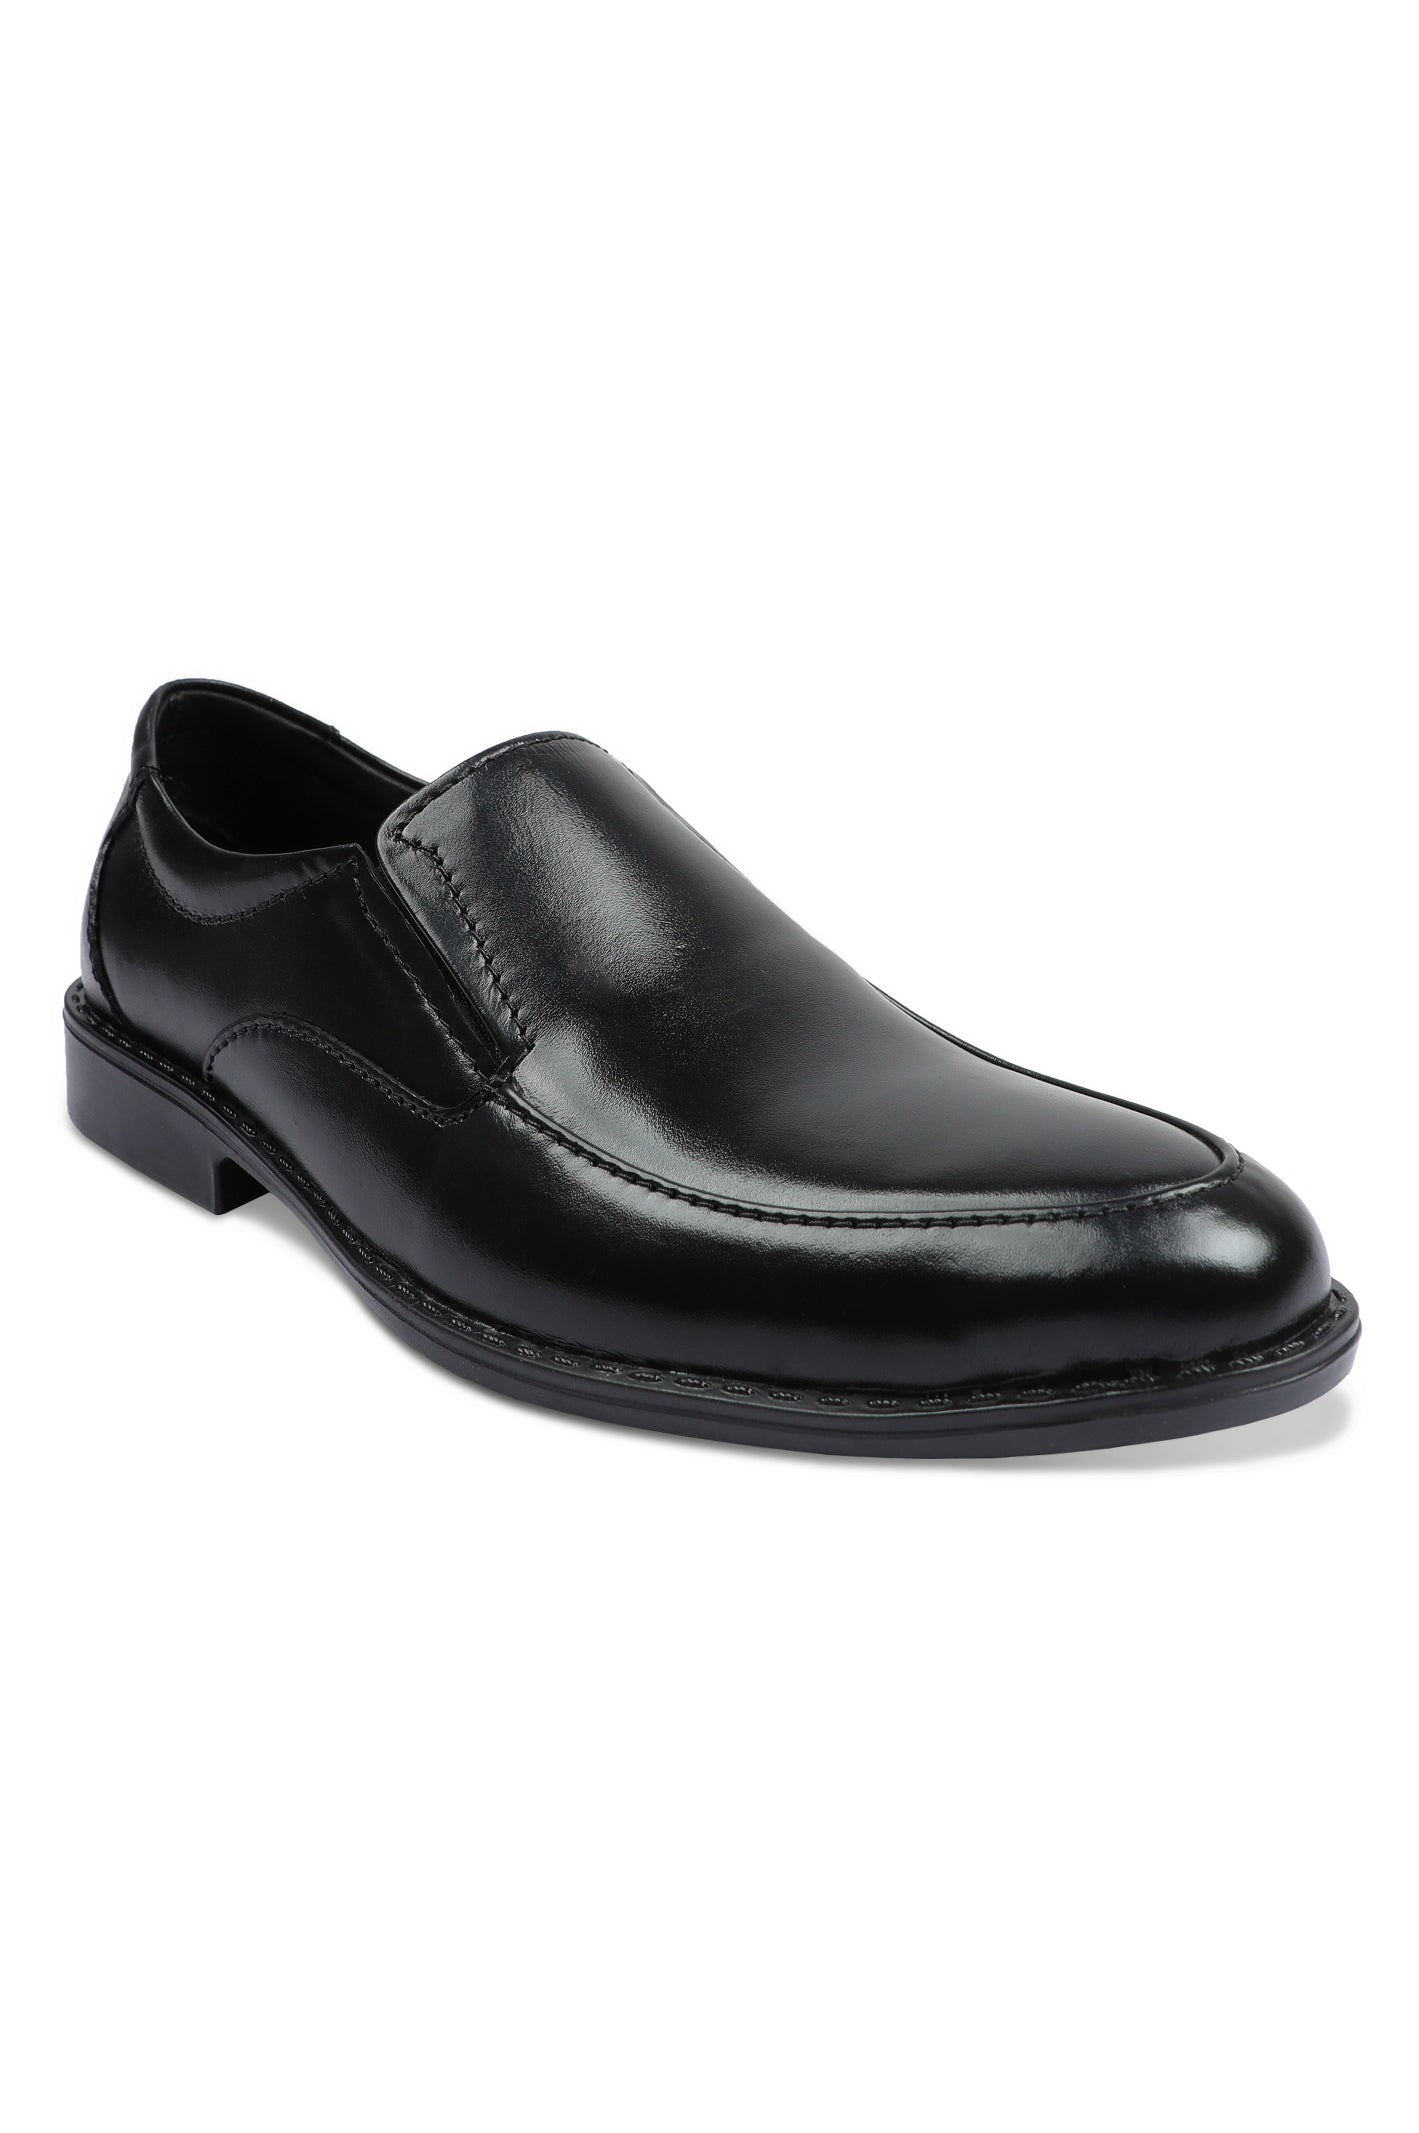 Formal Shoes For Men in Black SKU: SMF-0199-BLACK - Diners